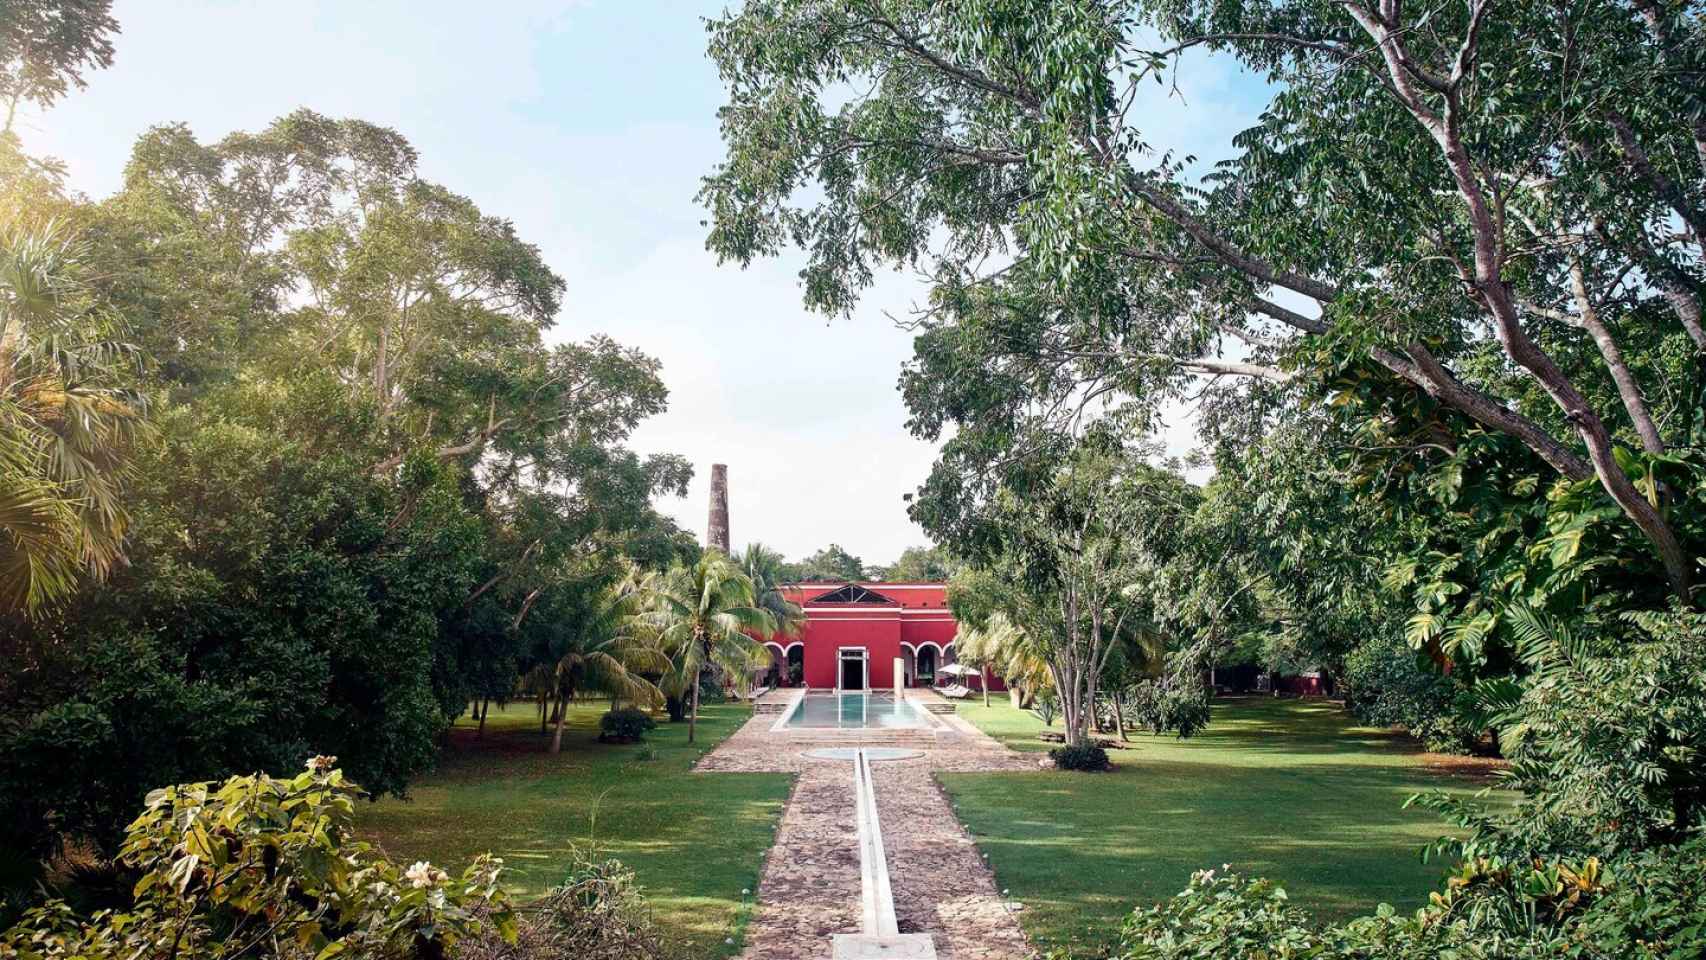 El hotel se encuentra en plena selva tropical de Yucatán.